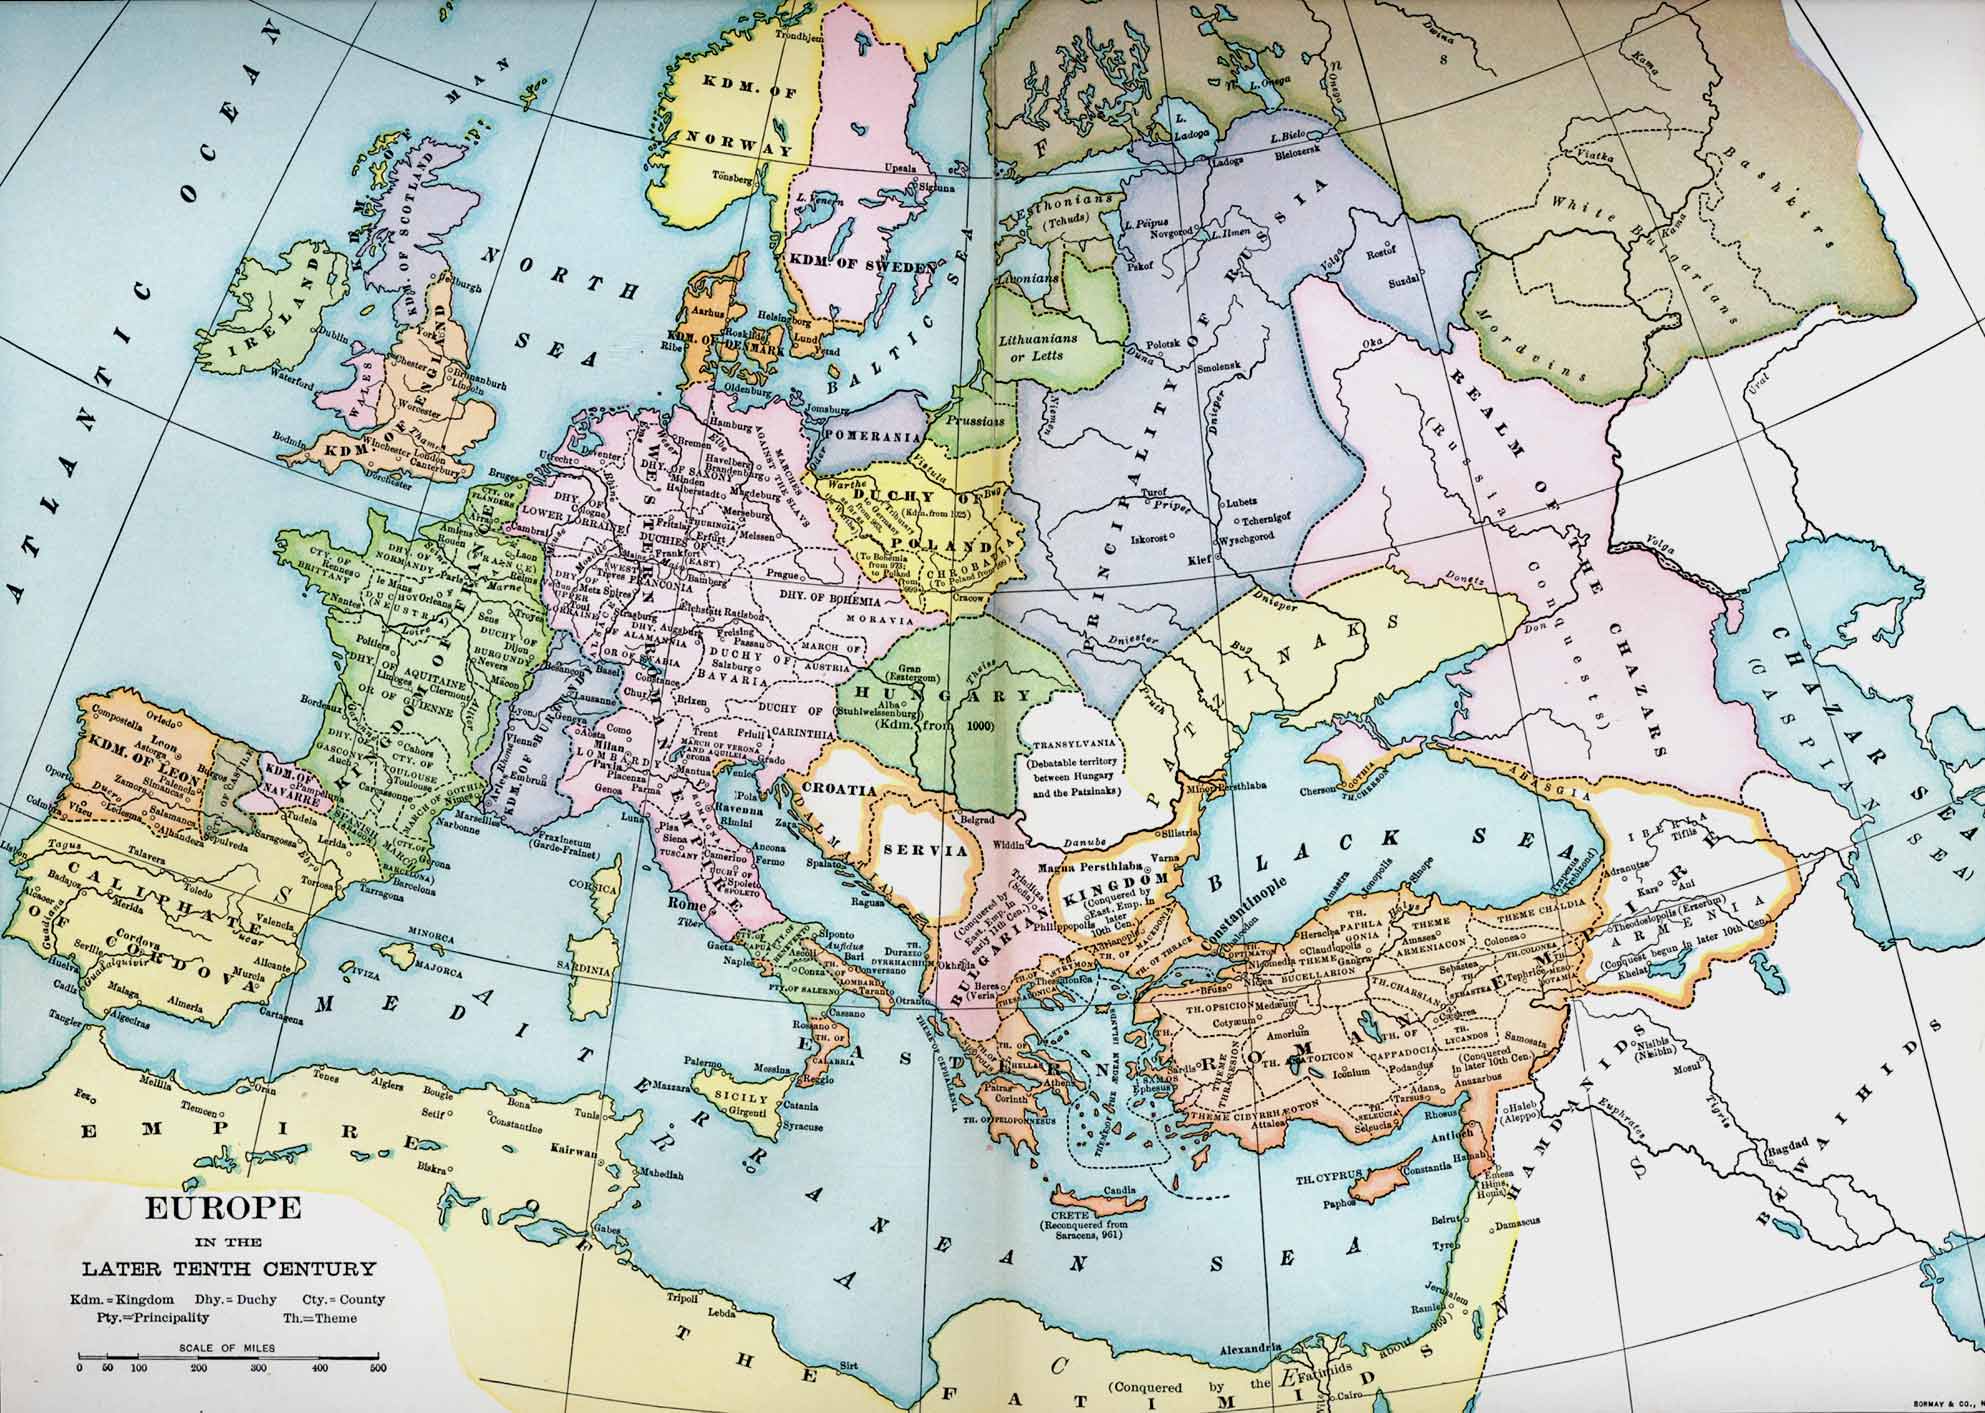 Европа 11 12 века. Карта Европы в 10 веке. Политическая карта Европы в 9-11 веке. Карта Европы 10 век. Карта средневековой Европы 13 века.